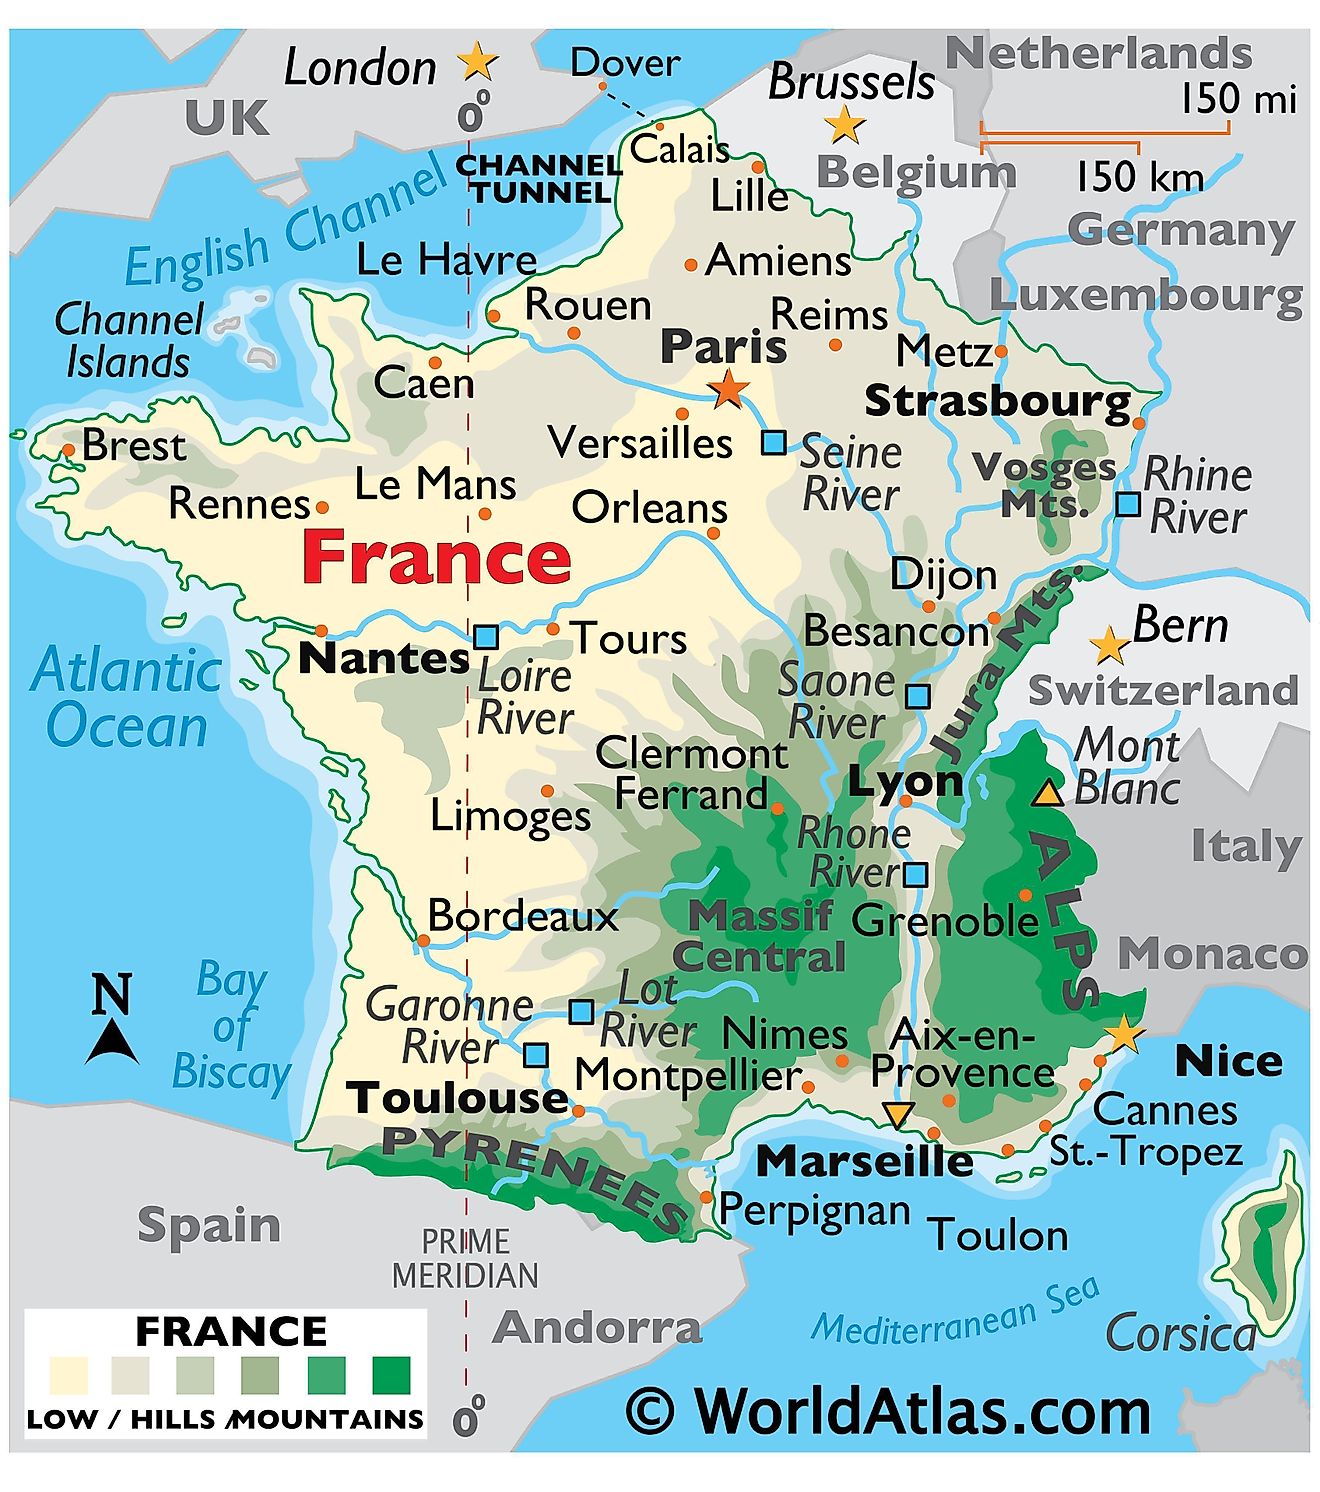 Mapa físico de Francia que muestra el terreno, las cadenas montañosas, el Mont Blanc, los principales ríos, las ciudades importantes, las fronteras internacionales, etc.